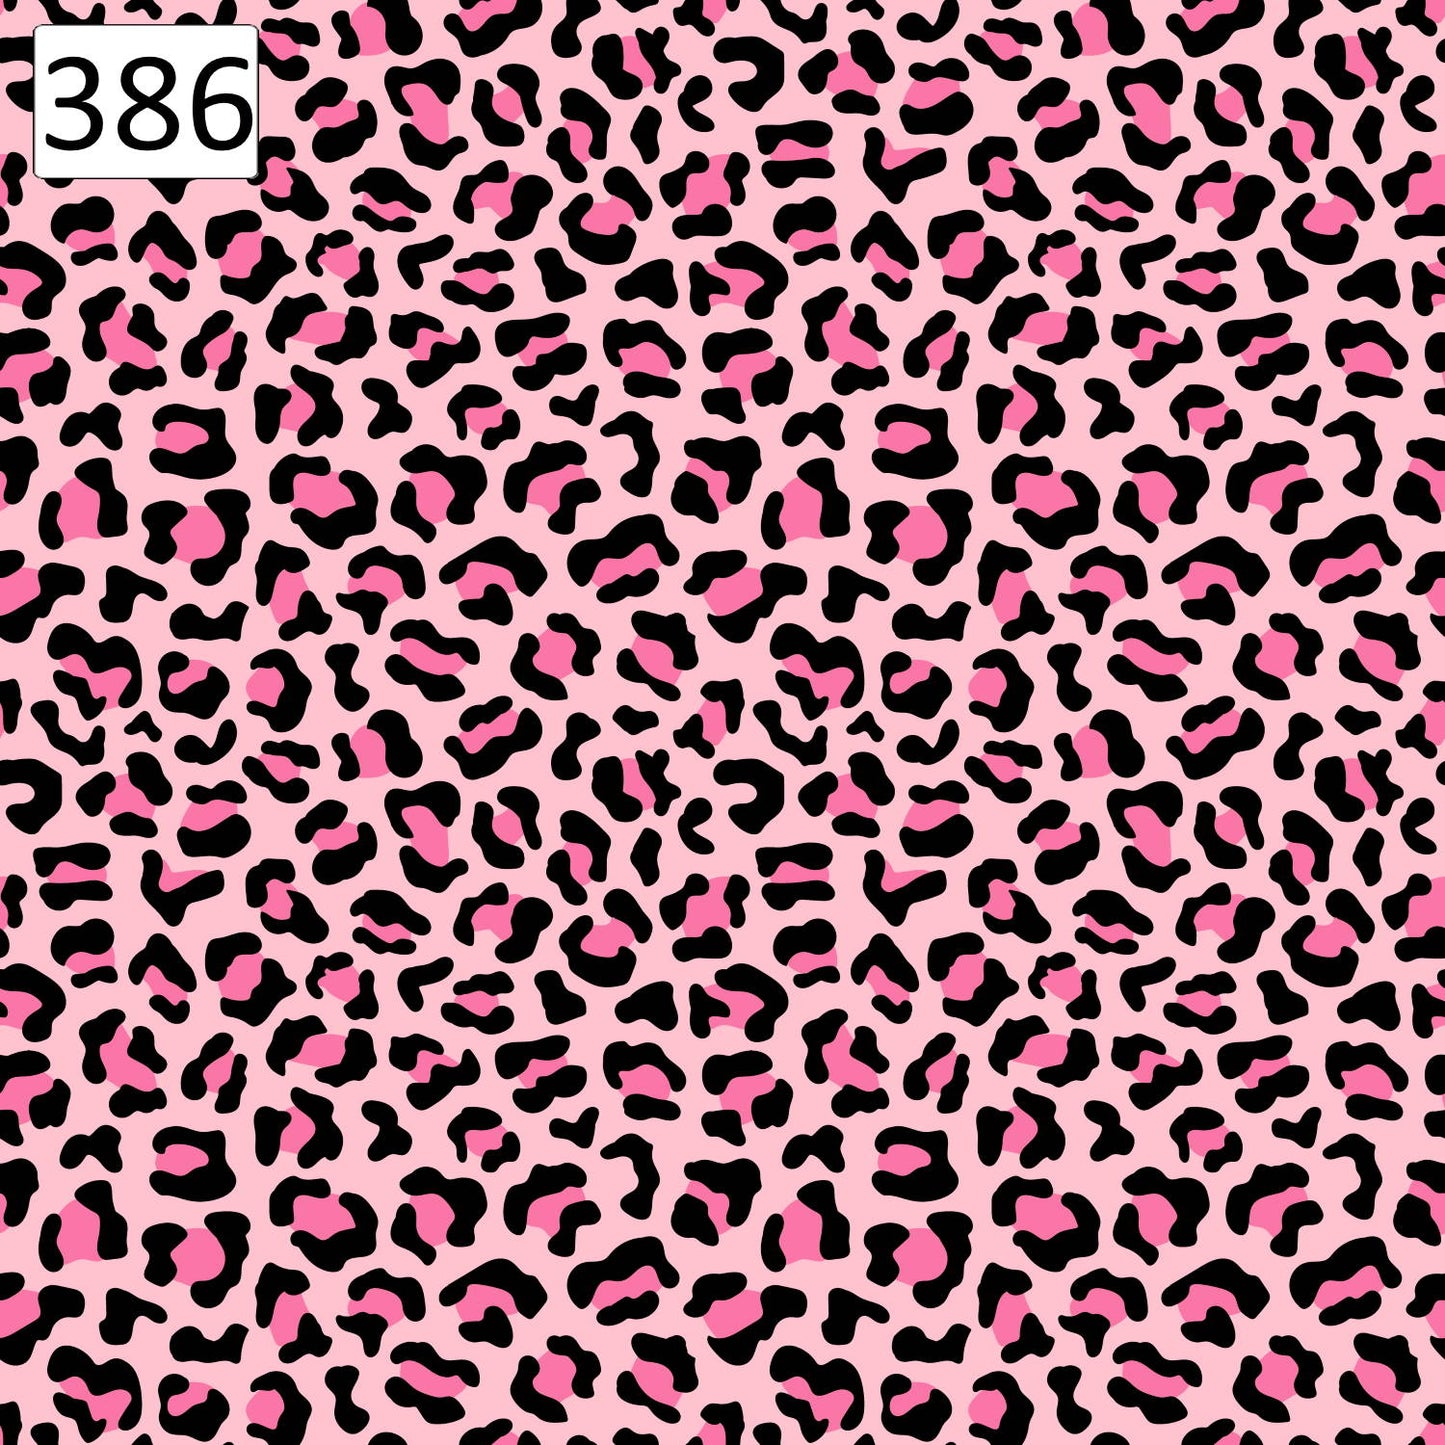 Pattern 386 pink spots